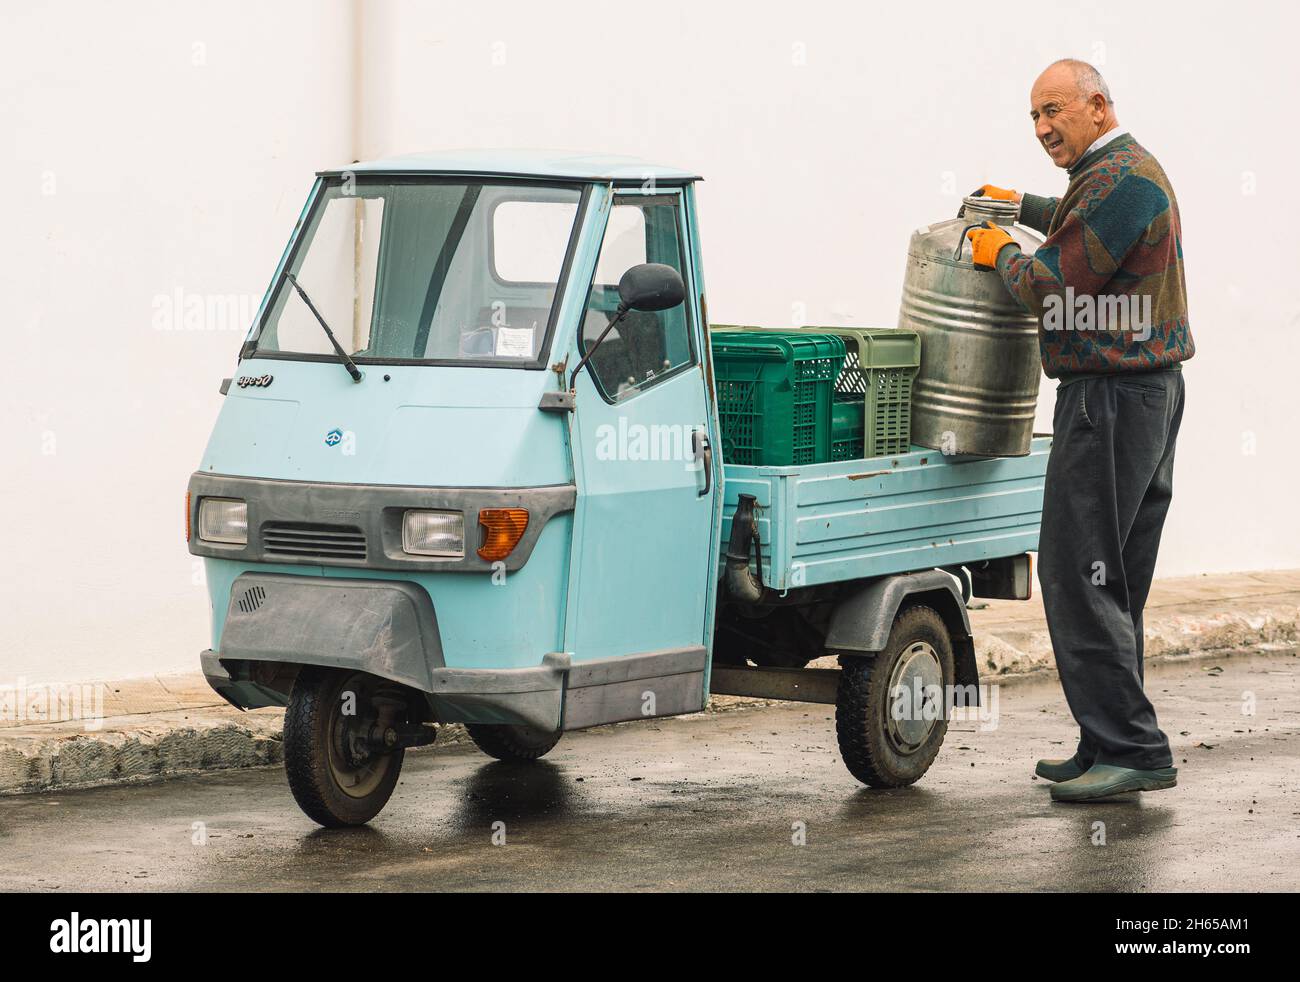 Ein alter Bauer mit einem alten, leichten kommerziellen Affe-Auto, das ein Olivenöl-Fass trägt, das gerade in Apulien, Italien, hergestellt wurde Stockfoto